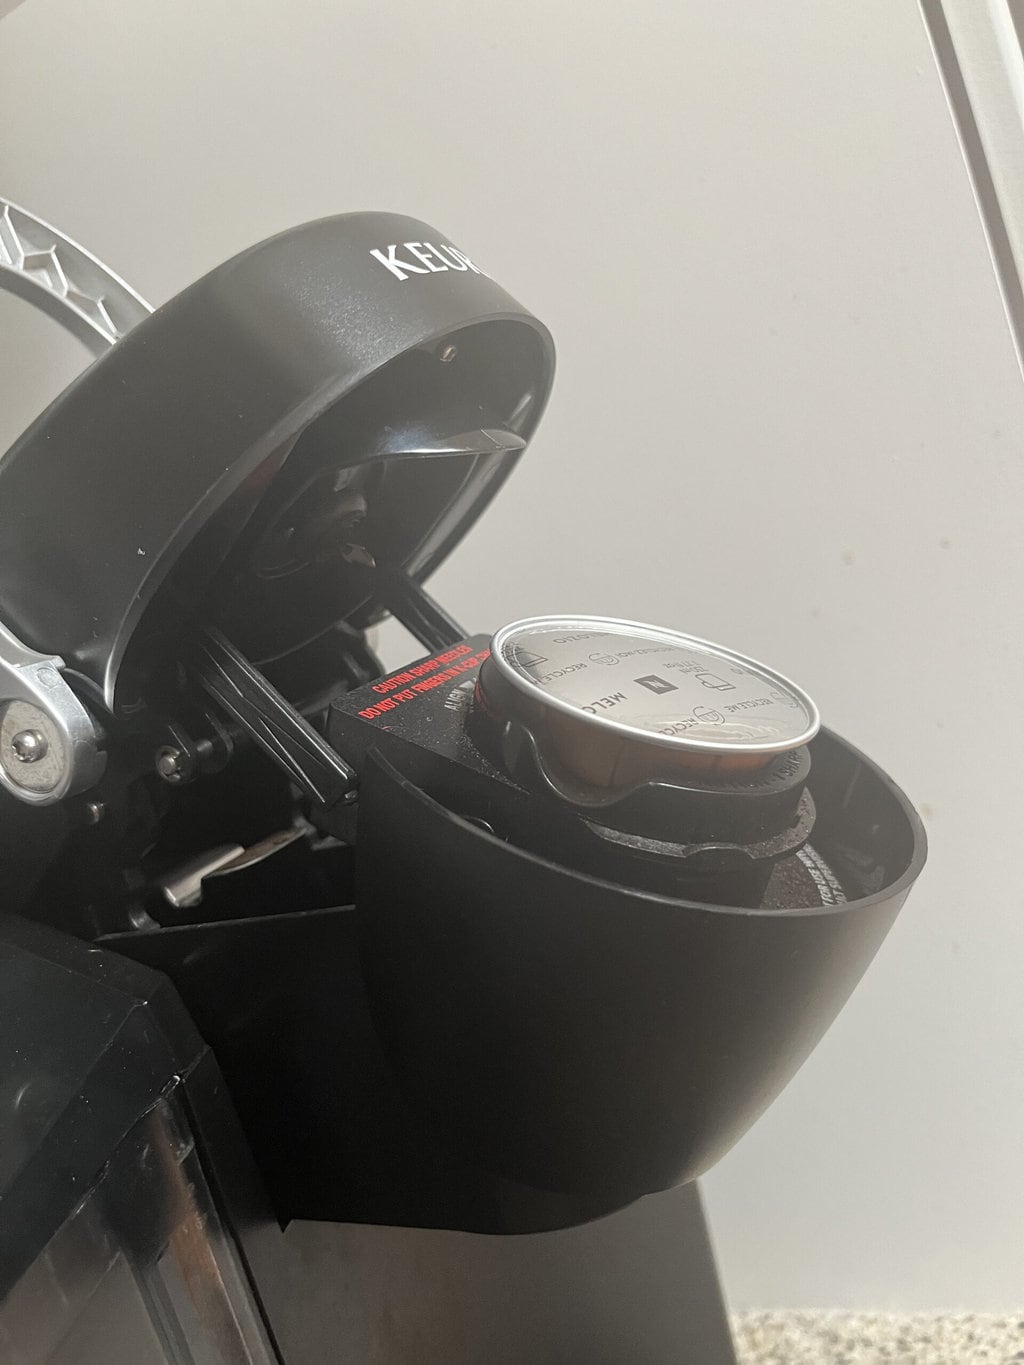 K-cup pod in Keurig coffee machine